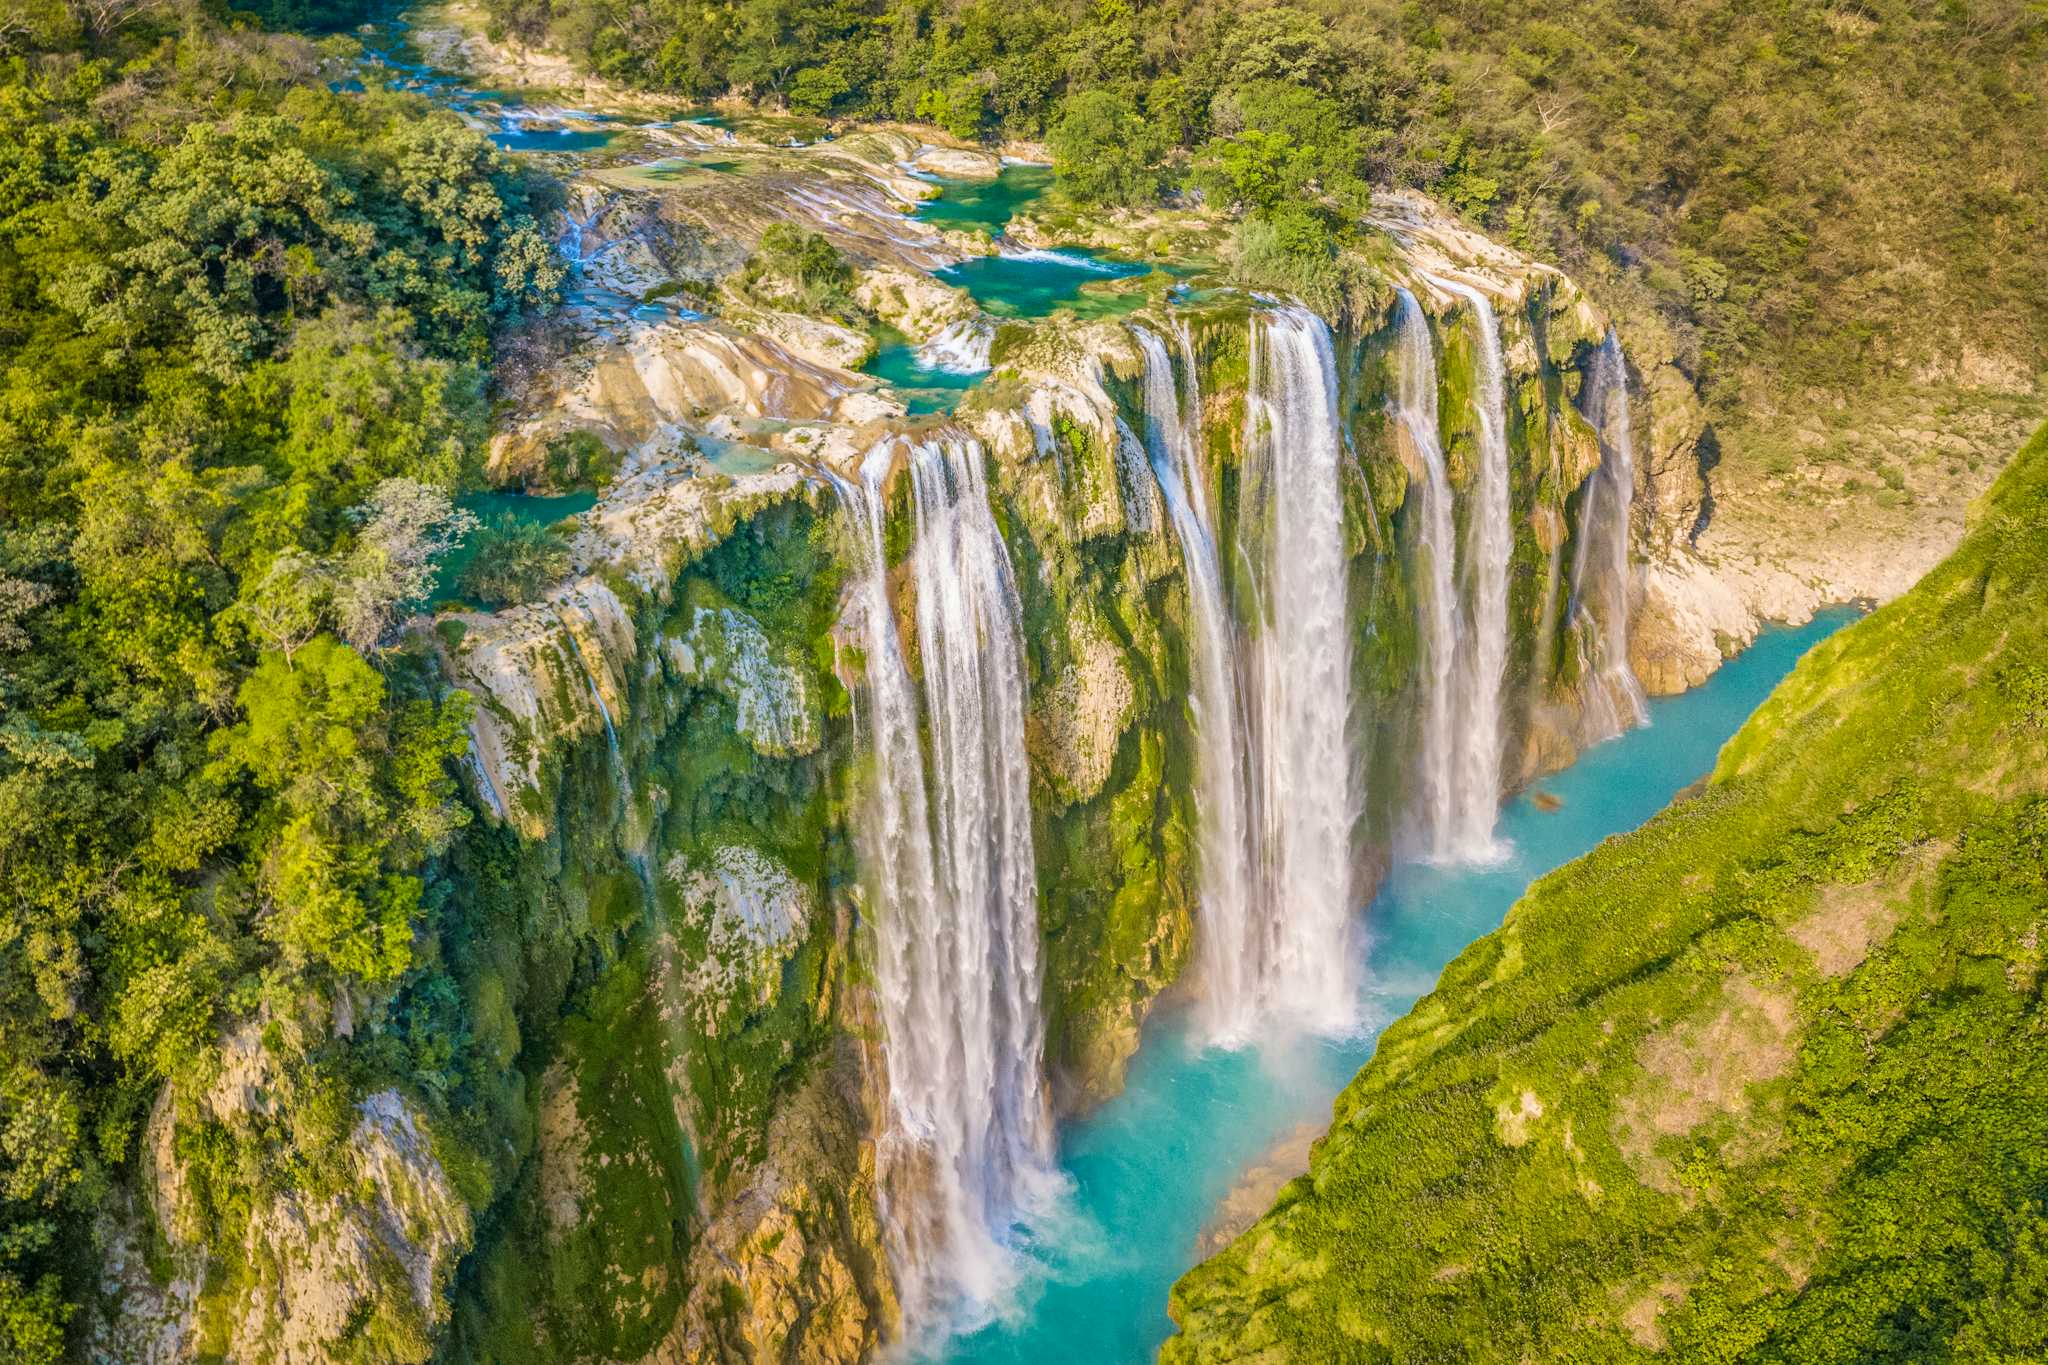 Tamul Waterfall